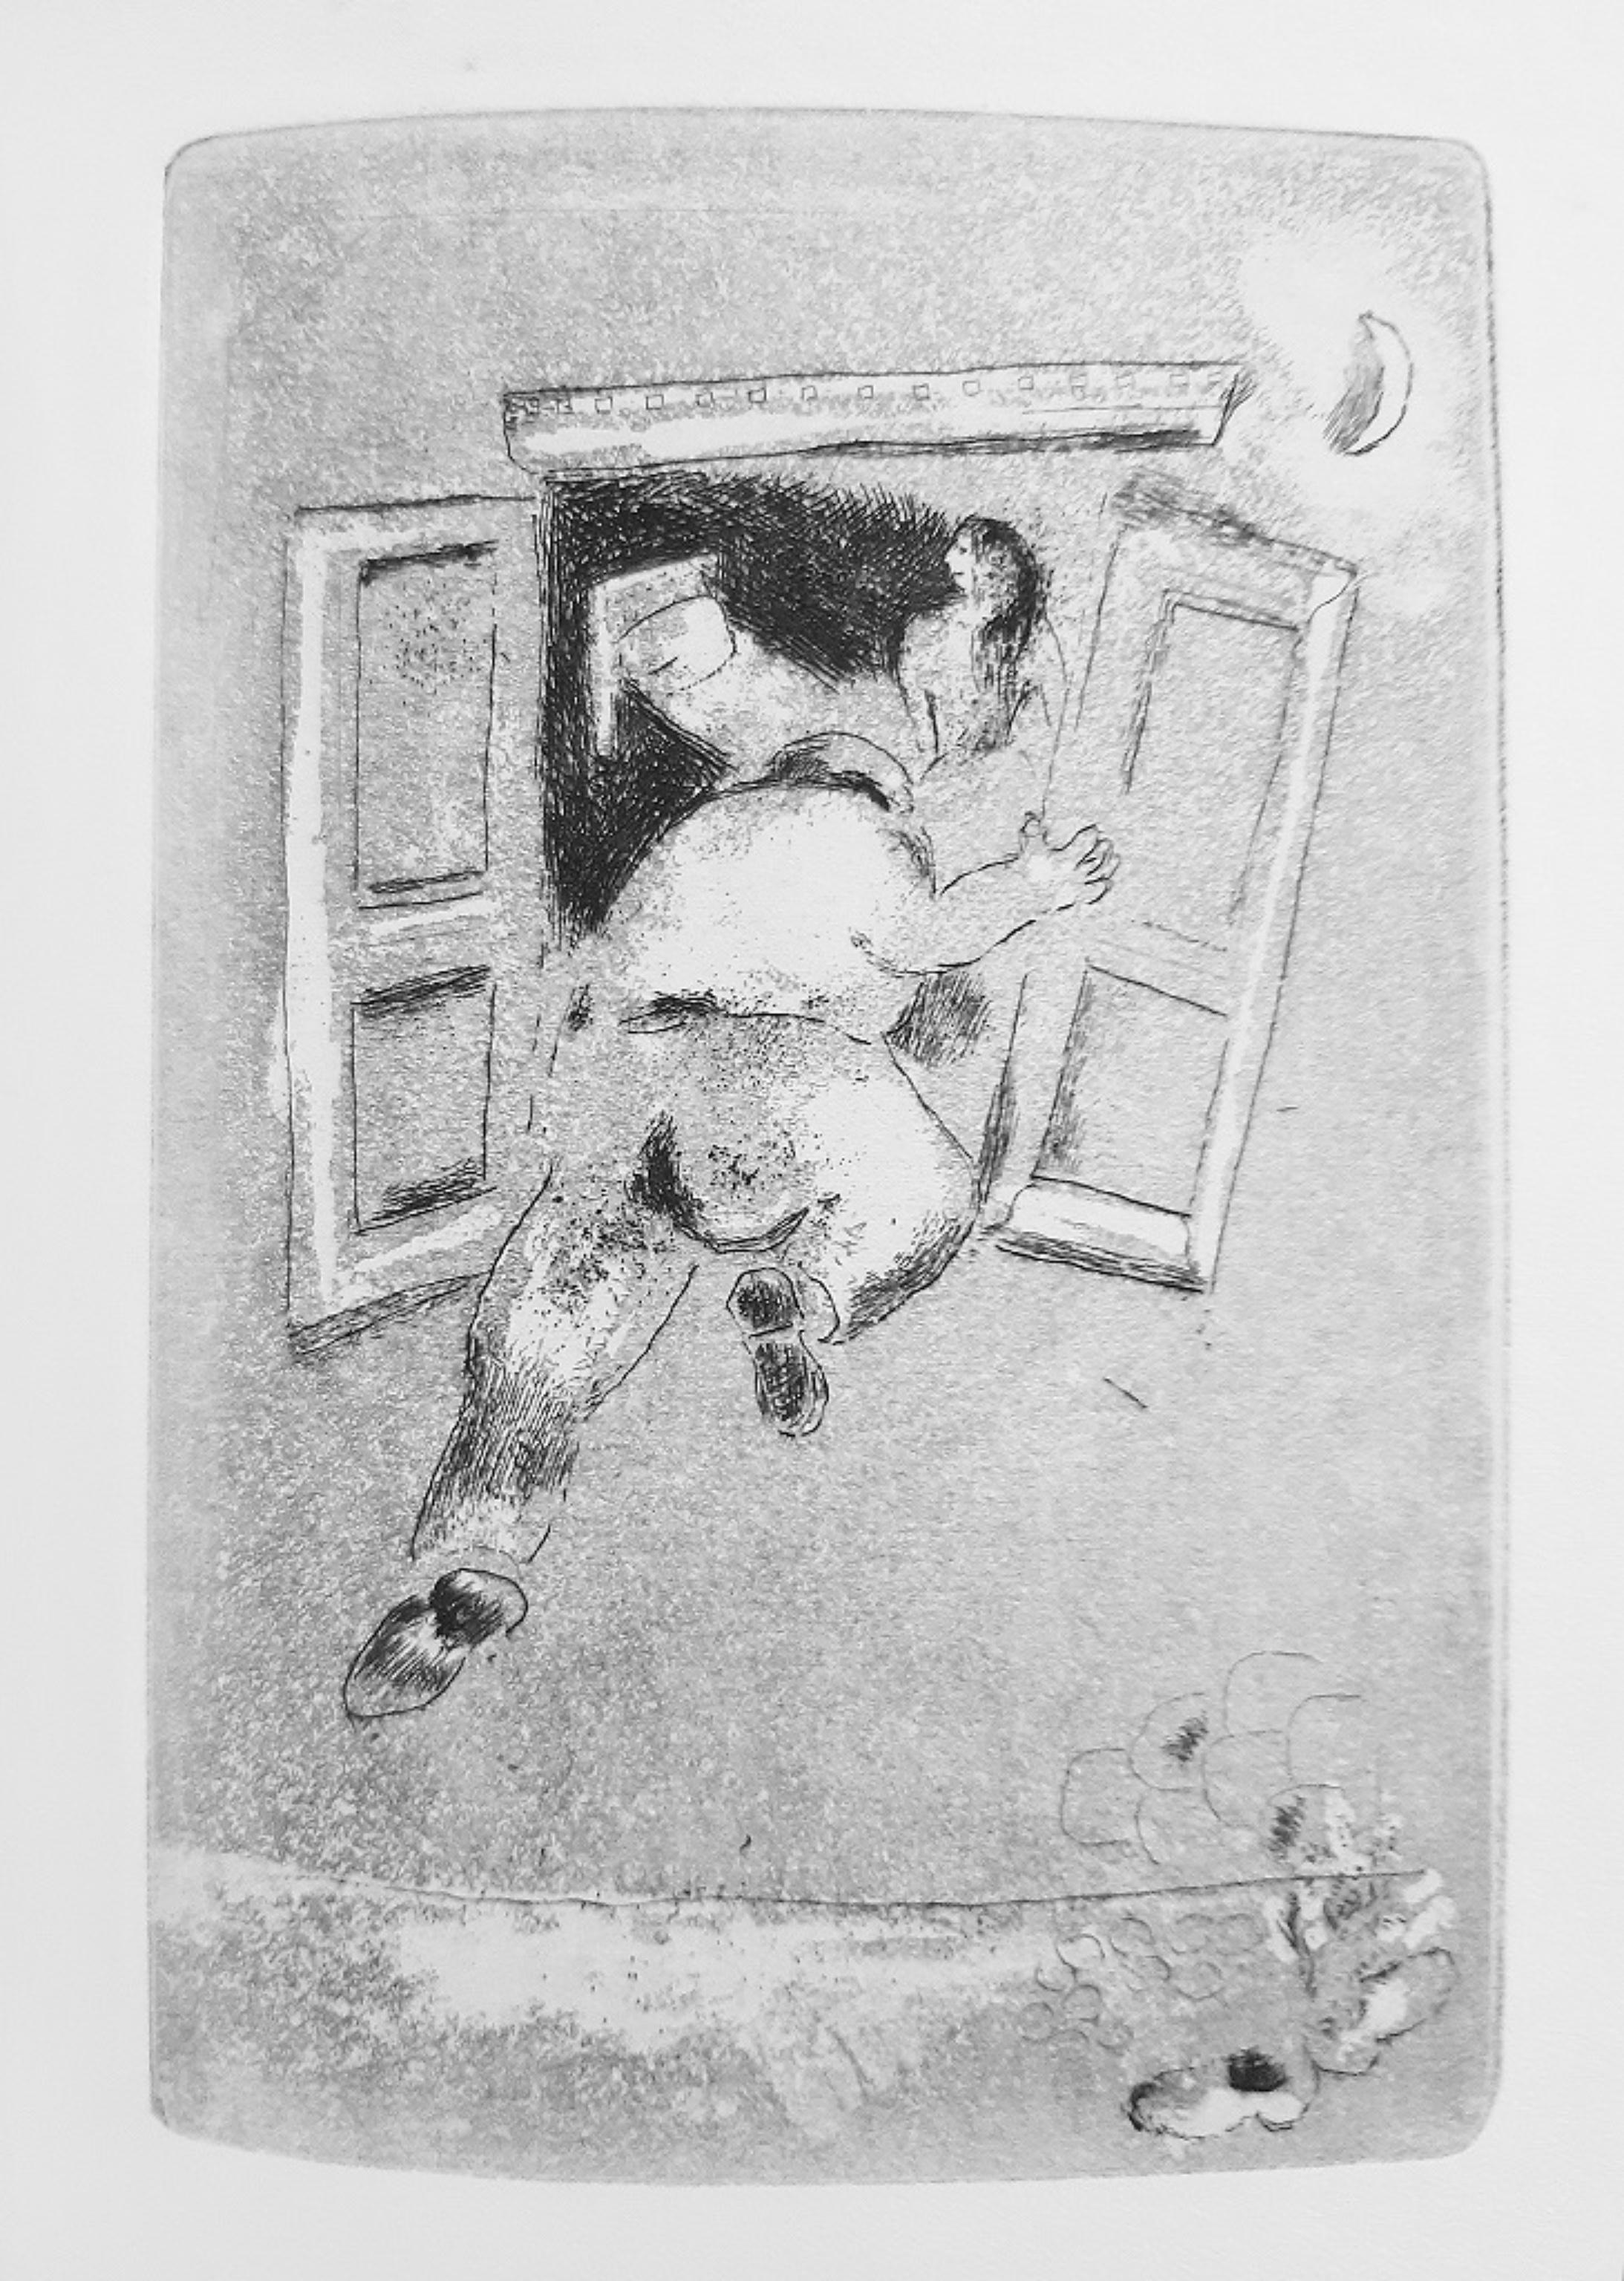 Maternité ist ein modernes, seltenes Buch, das 1926 von Marcel Arland (Varennes-sur-Amance, 1899 - Saint-Sauveur-sur-École, 1986) geschrieben und von Marc Chagall (Lëzna, 1887 - Saint-Paul-de-Vence, 1985) illustriert wurde.

Originalausgabe,